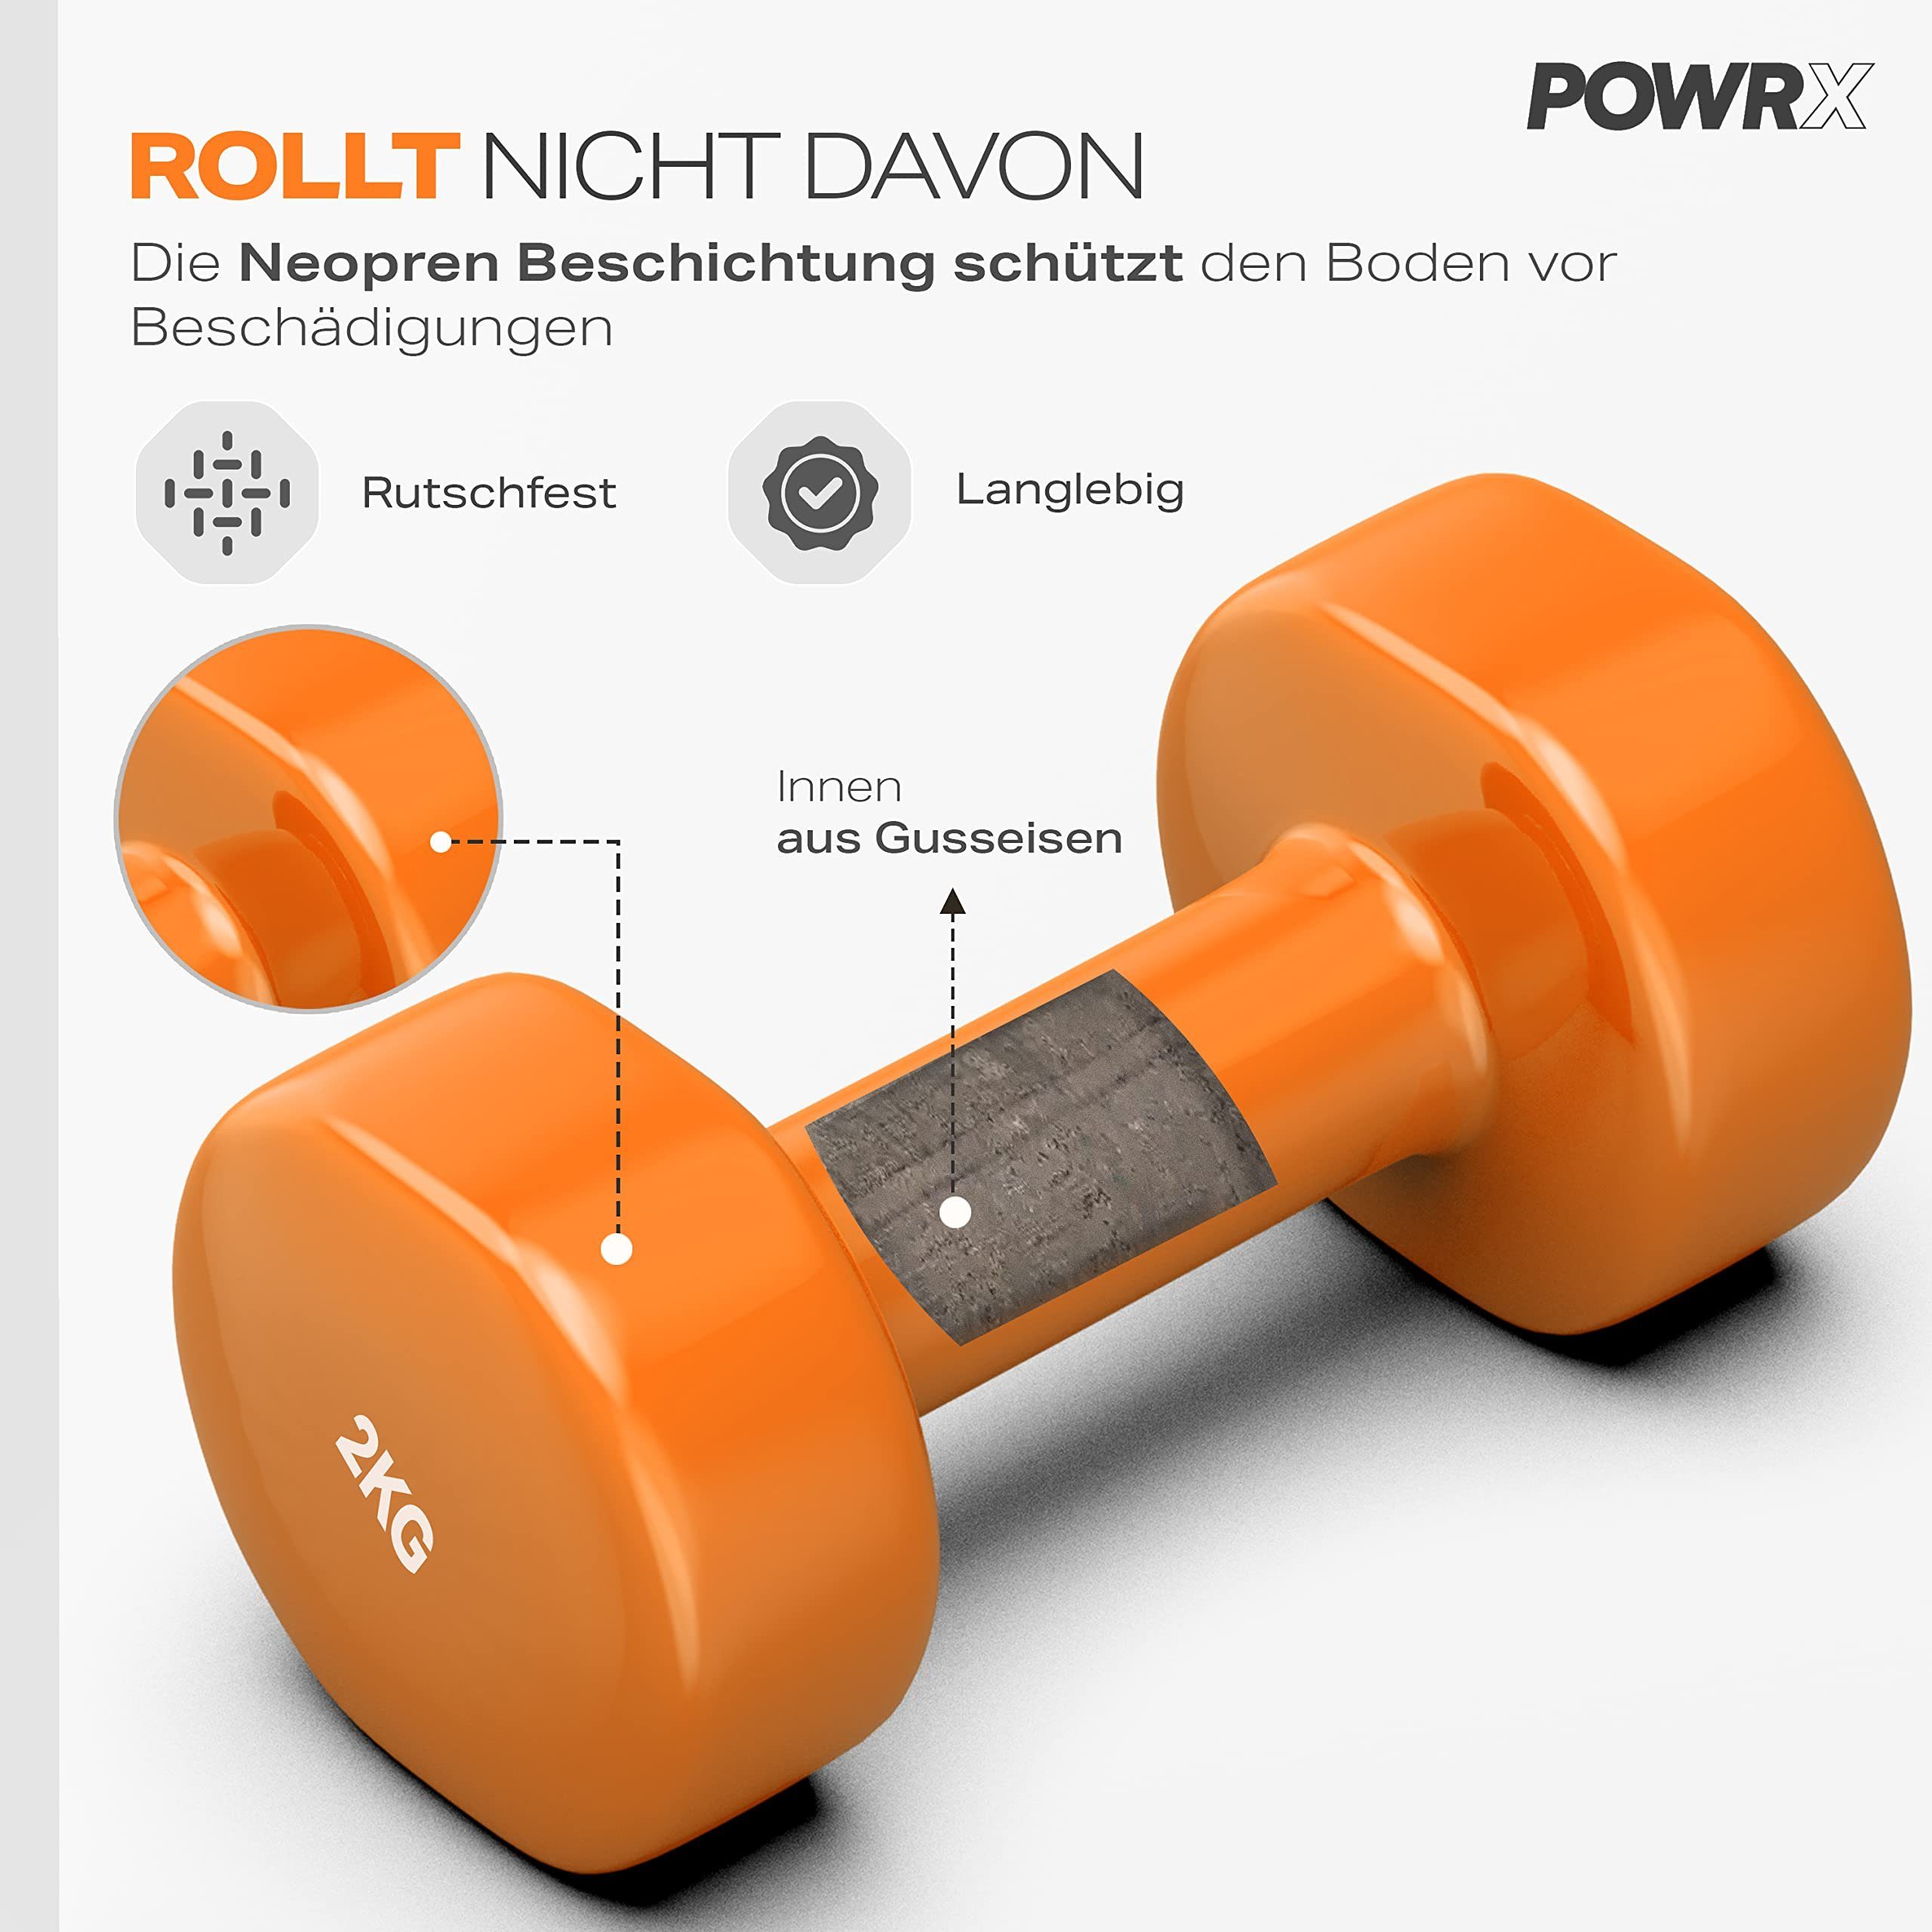 POWRX Paar 0,5kg-10kg Gymnastikhantel I Vinyl (2X2Kg) Orange Set, (Orange) Hanteln Kurzhantel